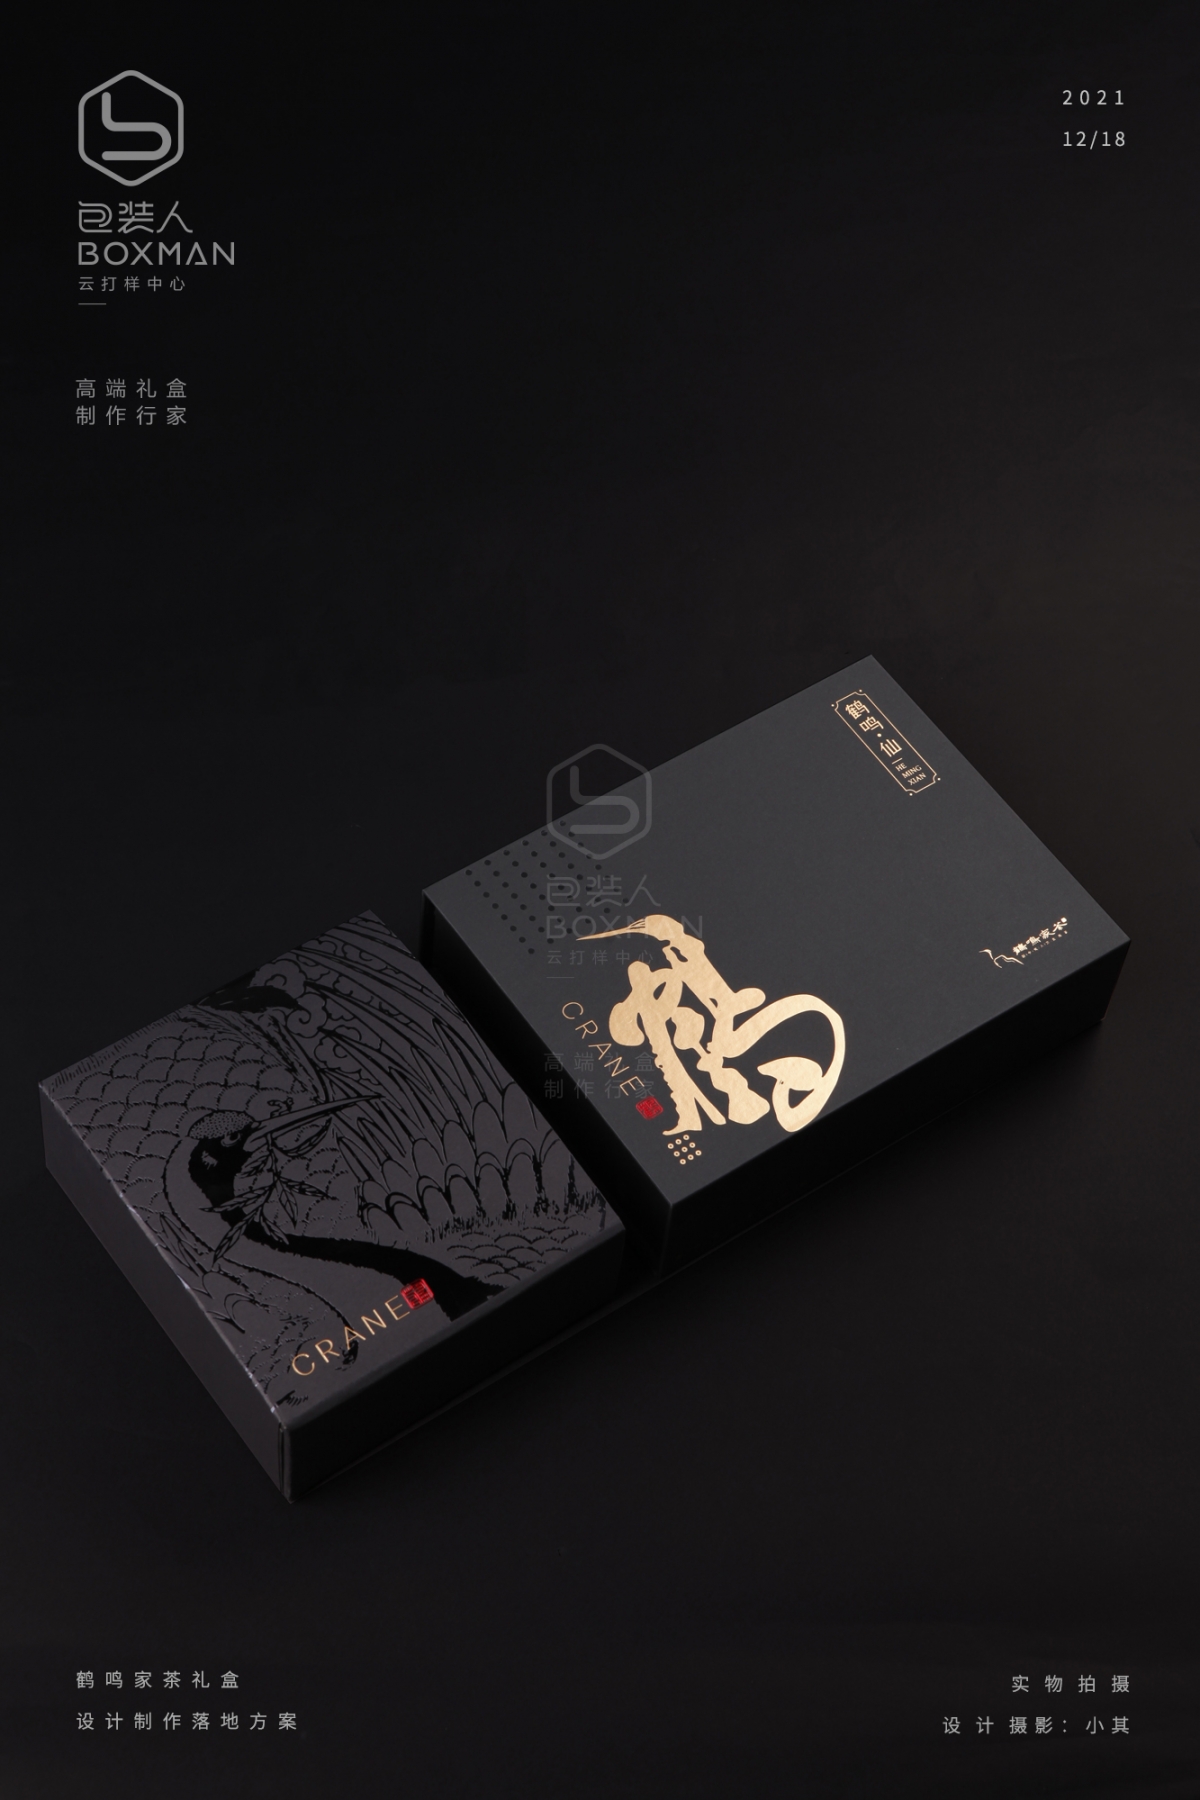 鹤鸣仙-水仙 礼盒包装设计与落地案例